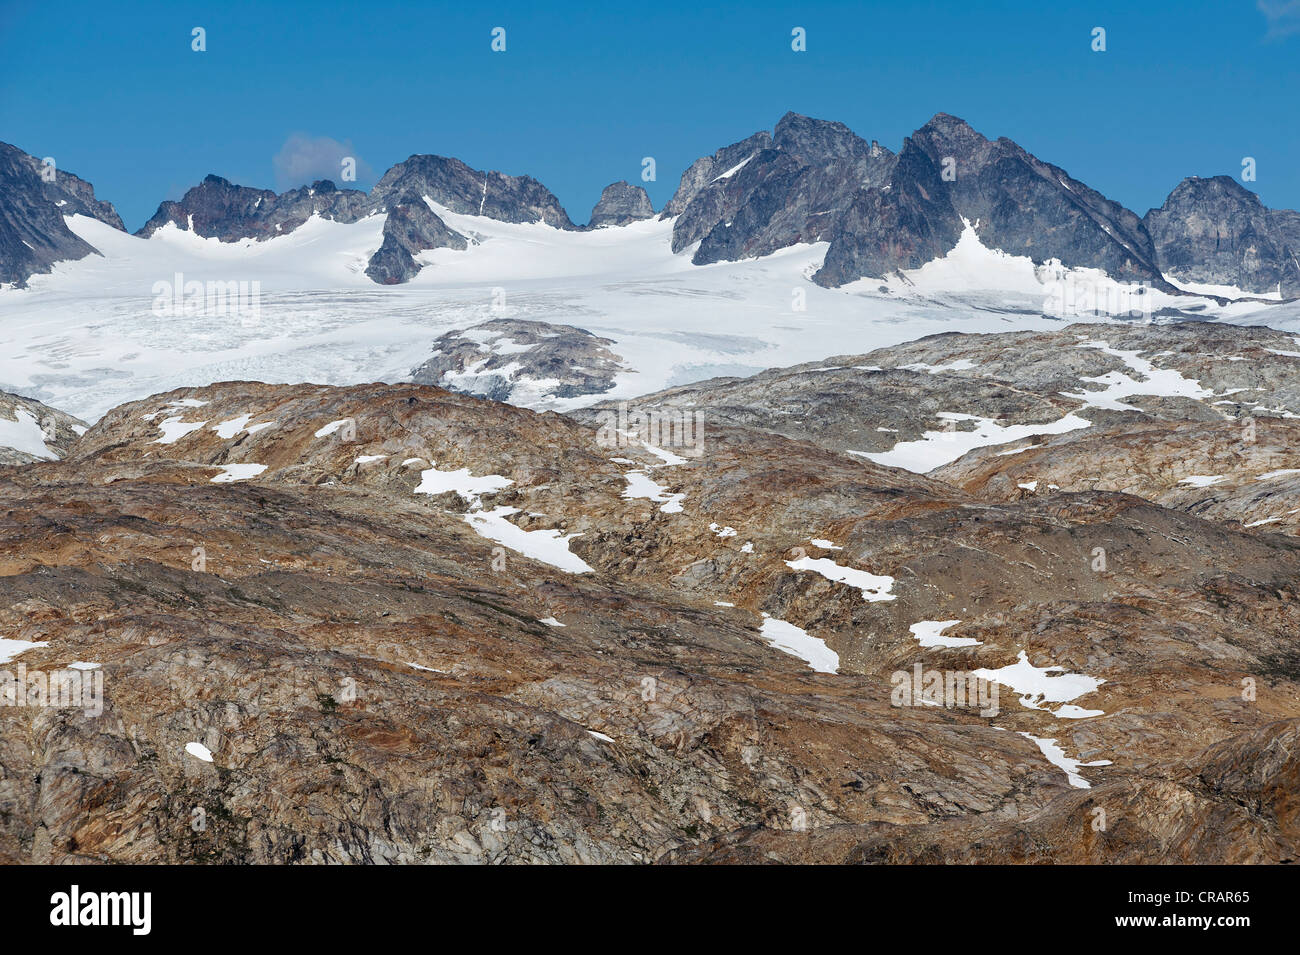 Mittivakkat ghiacciaio, Ammassalik Penisola, est della Groenlandia, Groenlandia Foto Stock